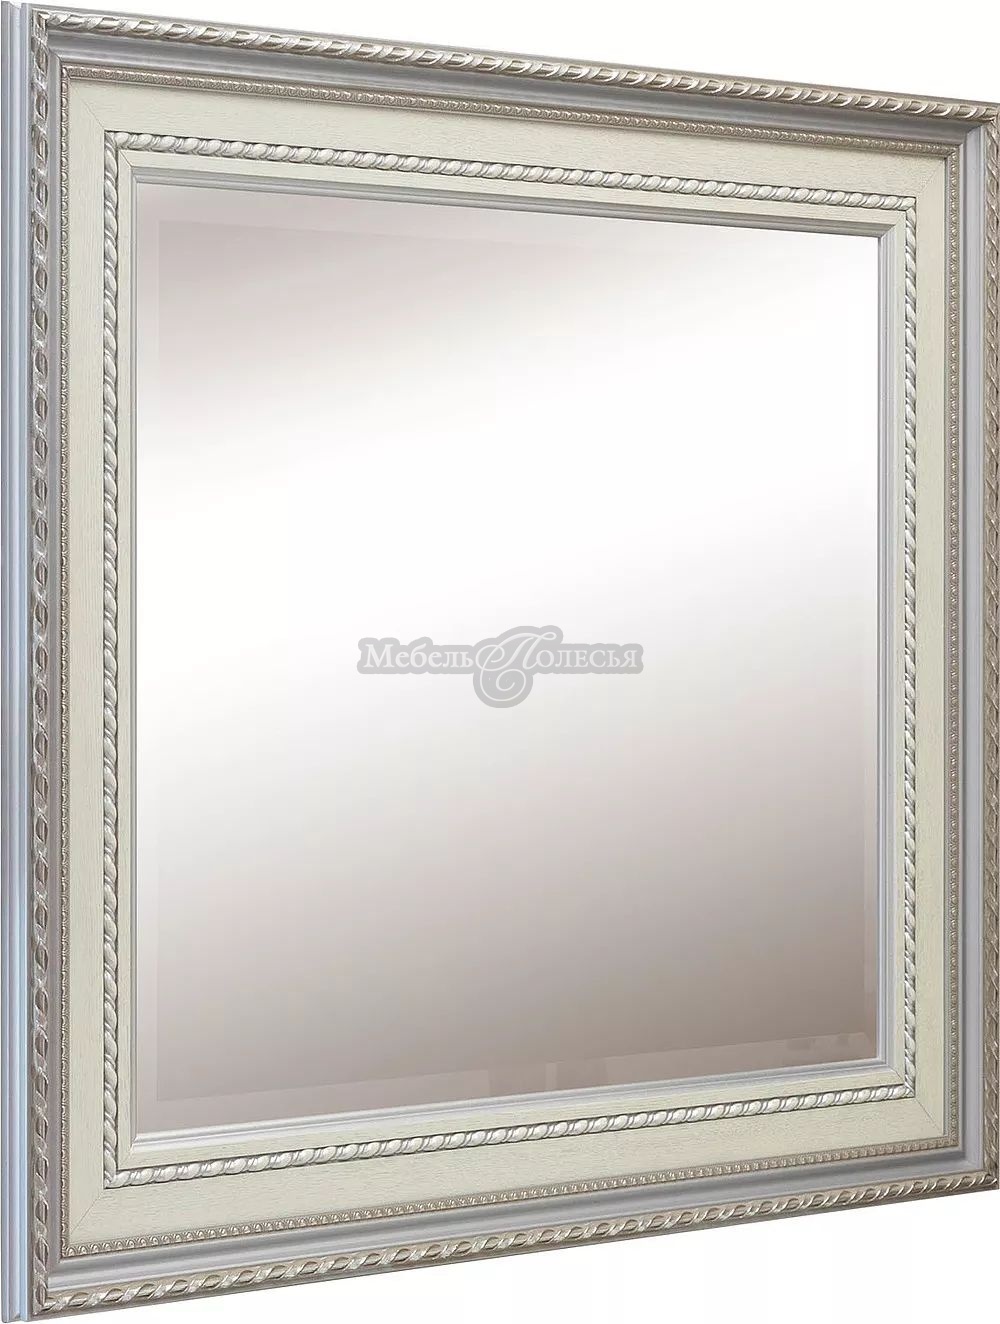 Зеркало Валенсия Д 1 П568.61 слонова кость с серебром. Фото �2